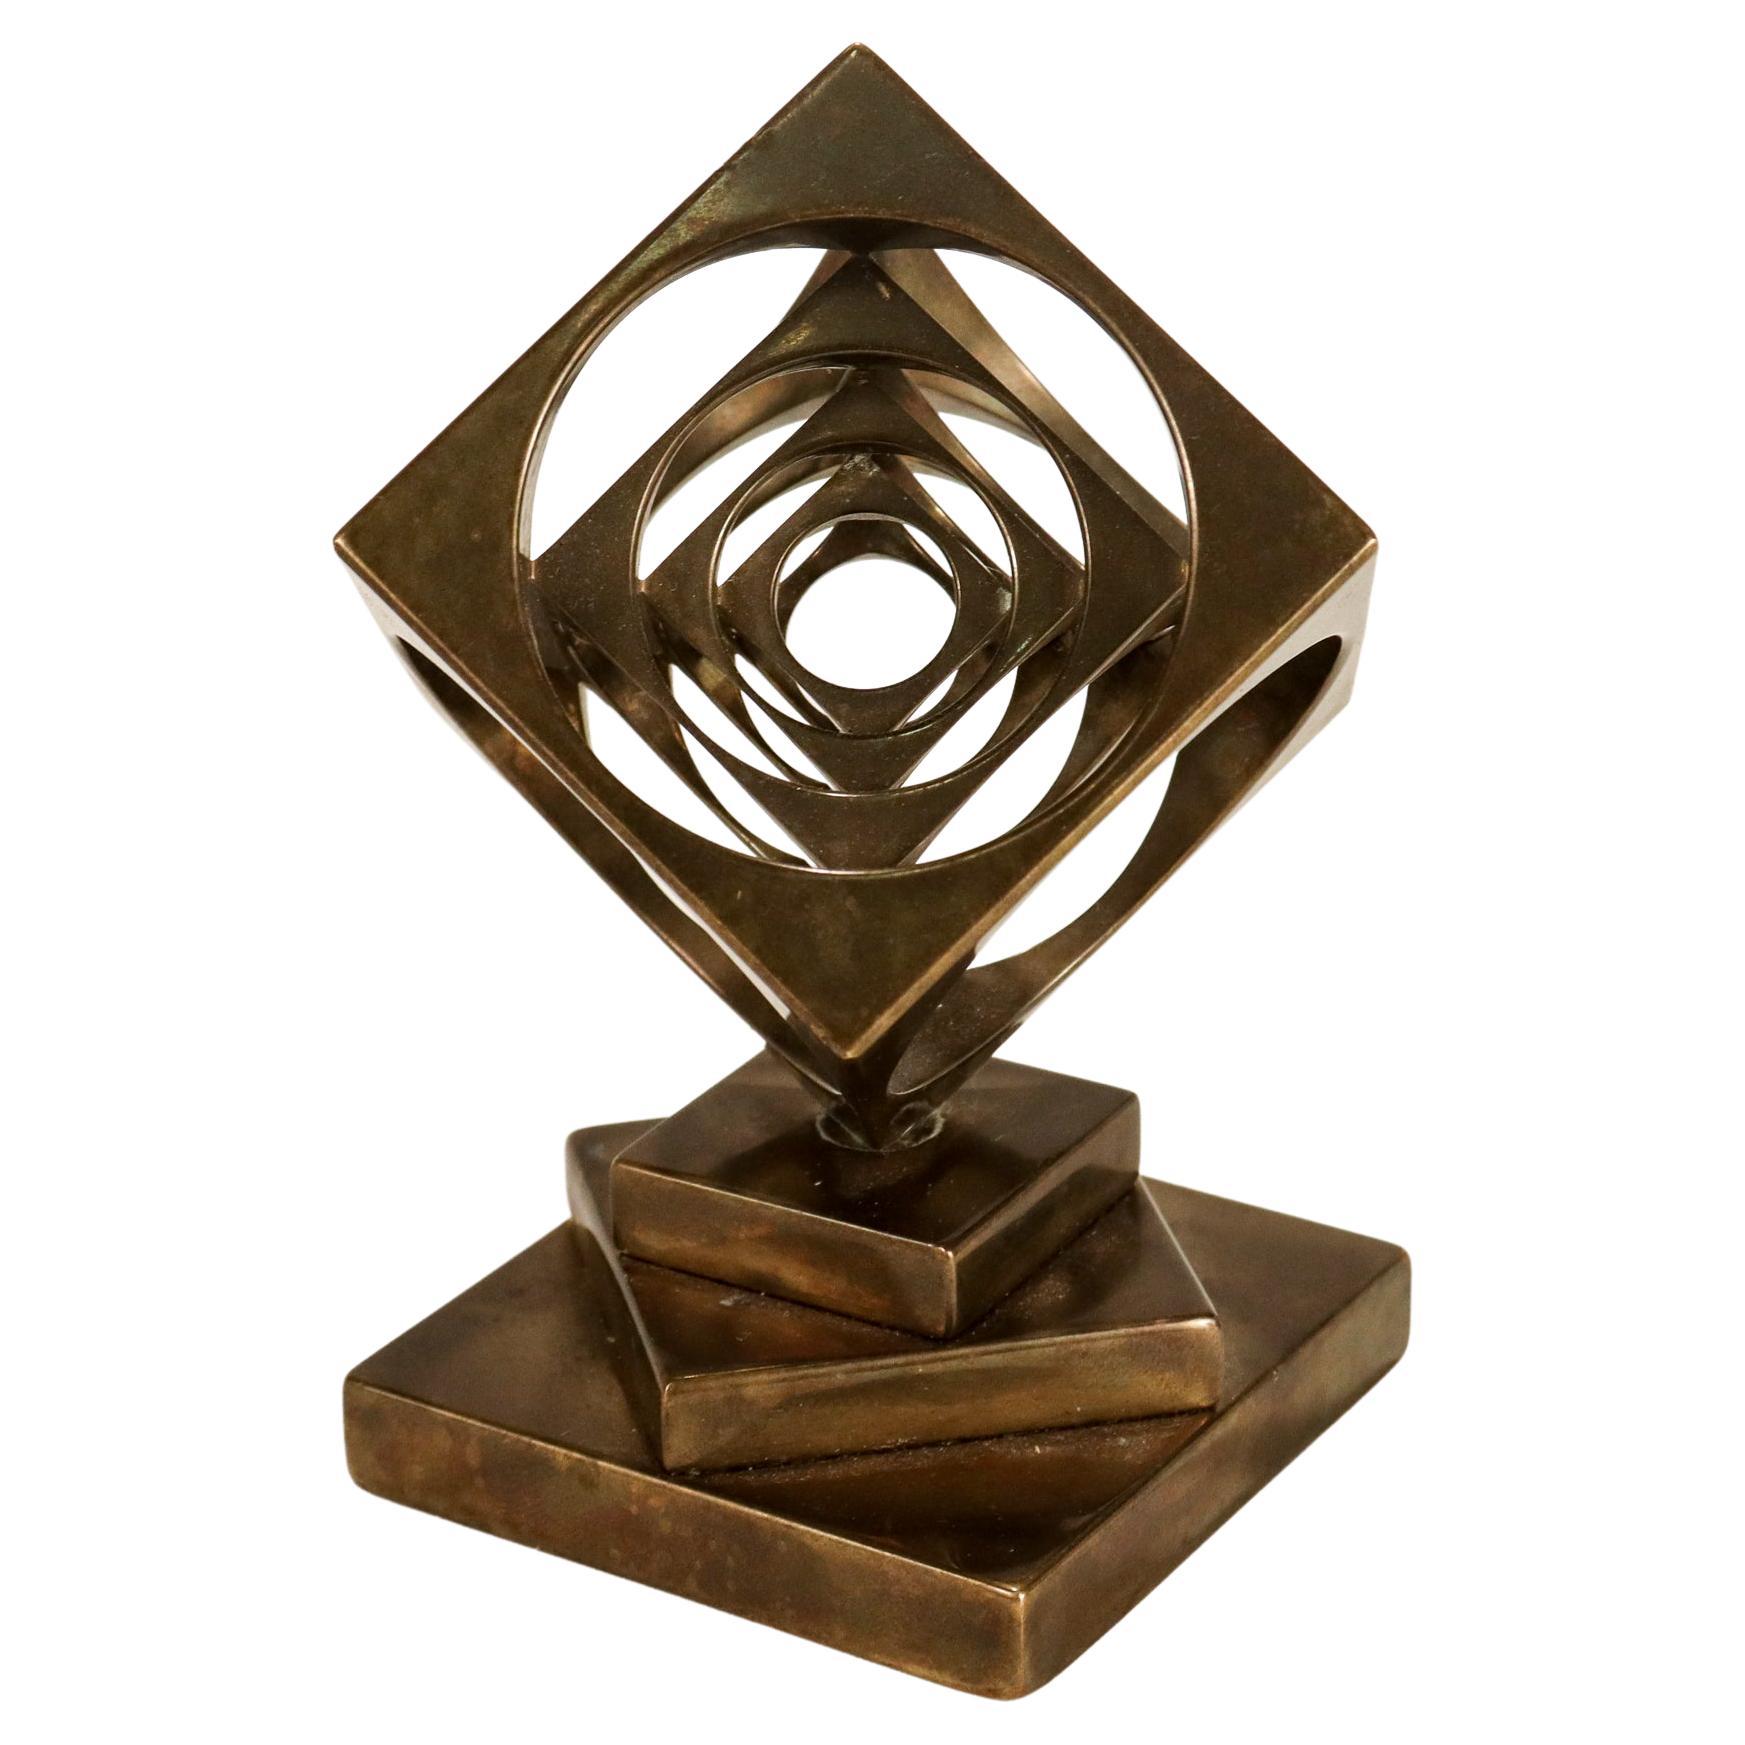 Ein feiner geometrischer Bronze-Briefbeschwerer für den Schreibtisch aus der Mitte des Jahrhunderts.

In Form eines Drechslerwürfels aus abgestuften Würfeln in Würfeln.

Montiert auf einem bearbeiteten Sockel aus abgestuften Quadraten.

Wird